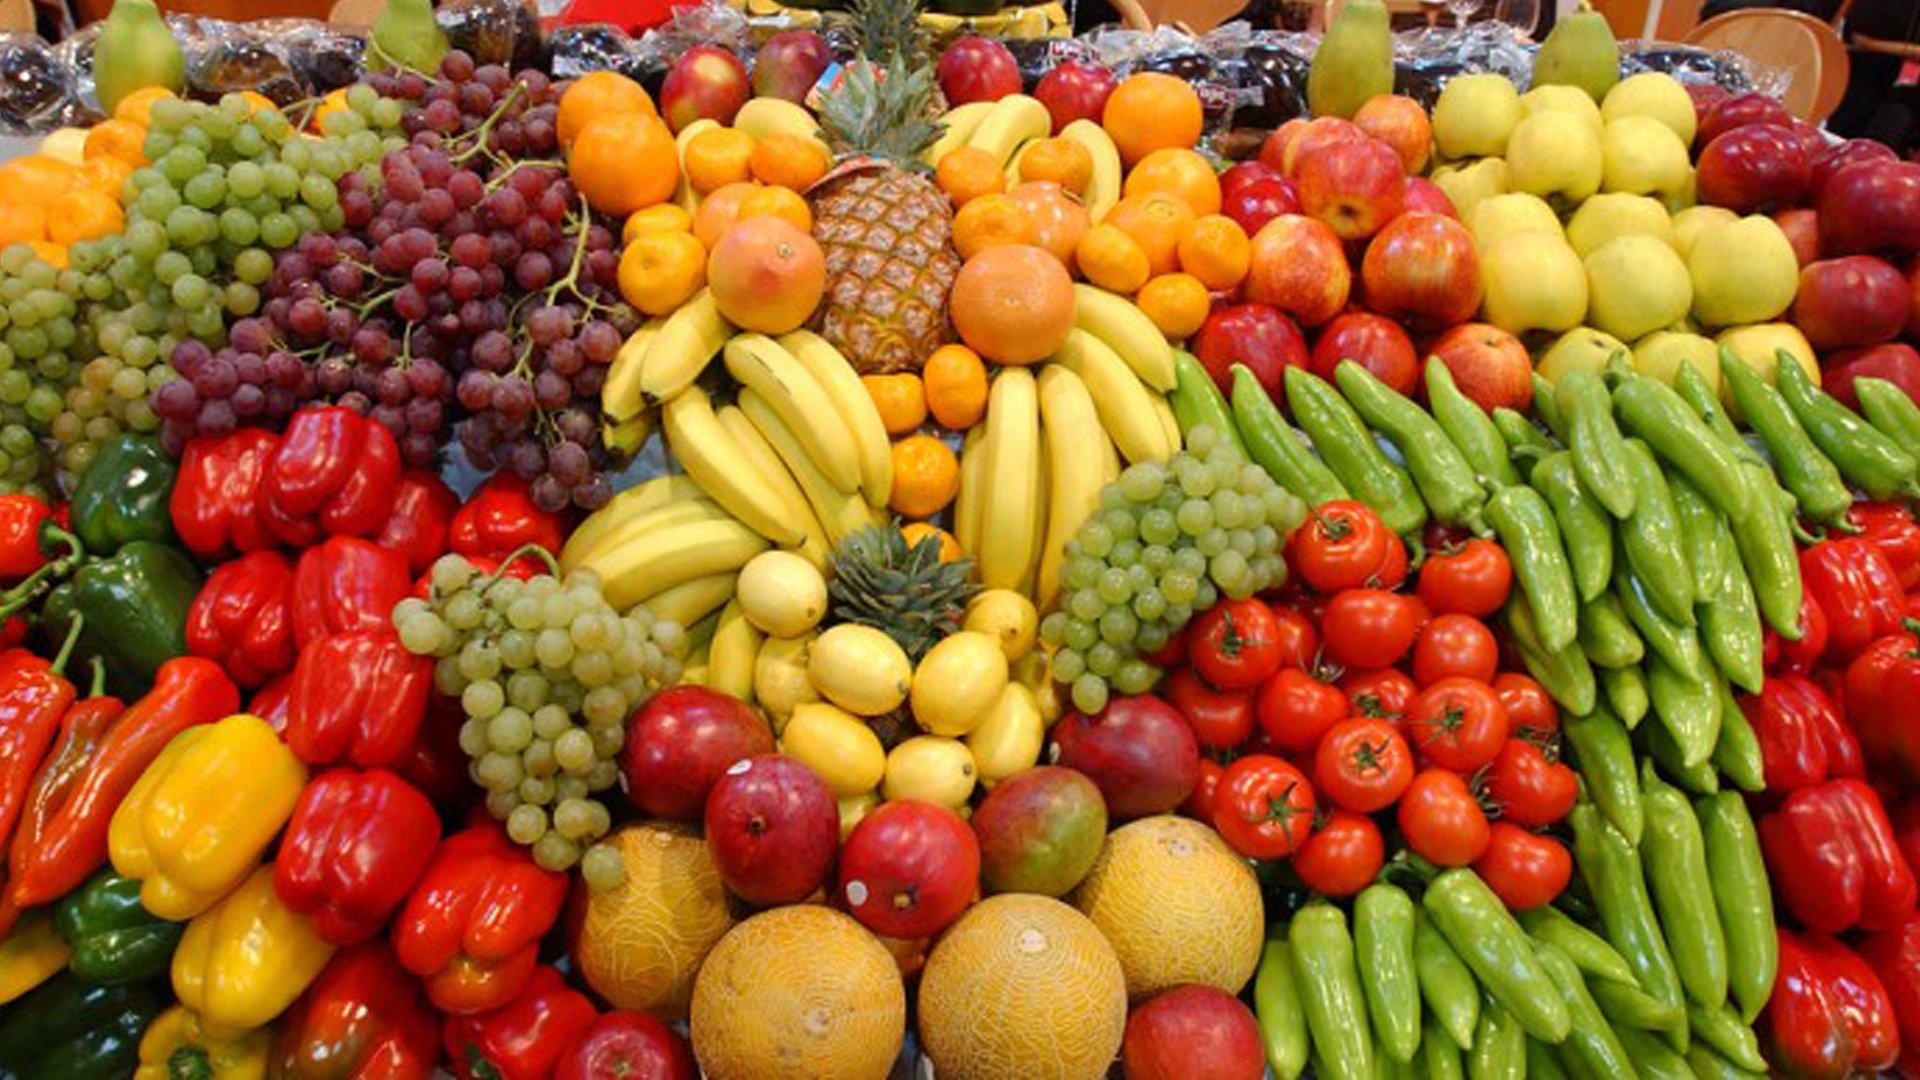 Плоды овощей и фруктов. Овощи и фрукты. Свежие овощи и фрукты. JDJIB B aheernb. Азербайджанские фрукты и овощи.